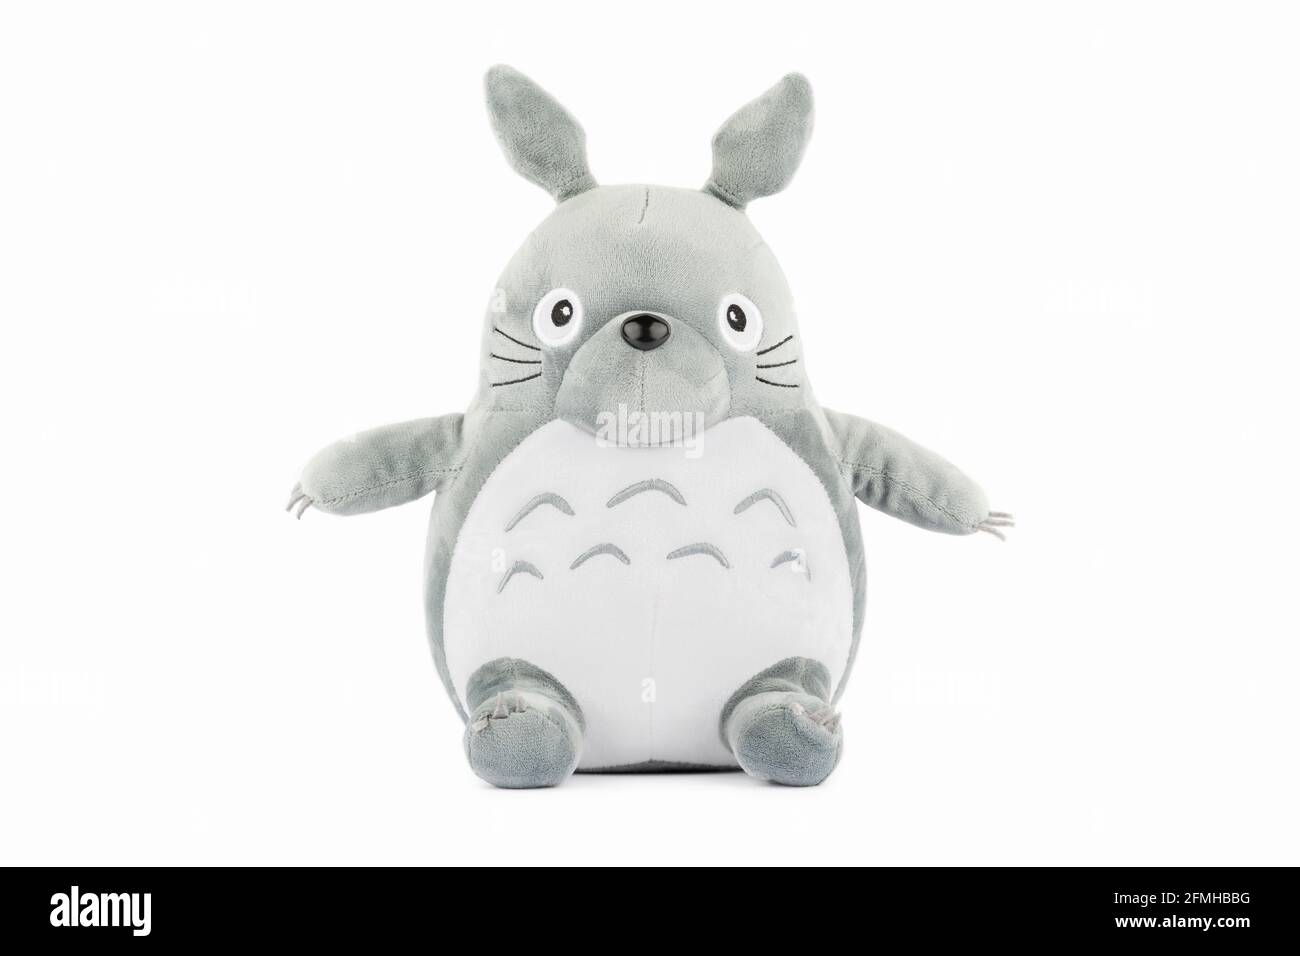 Un peluche del personaje Totoro de la película Mi vecino Totoro. Foto de stock